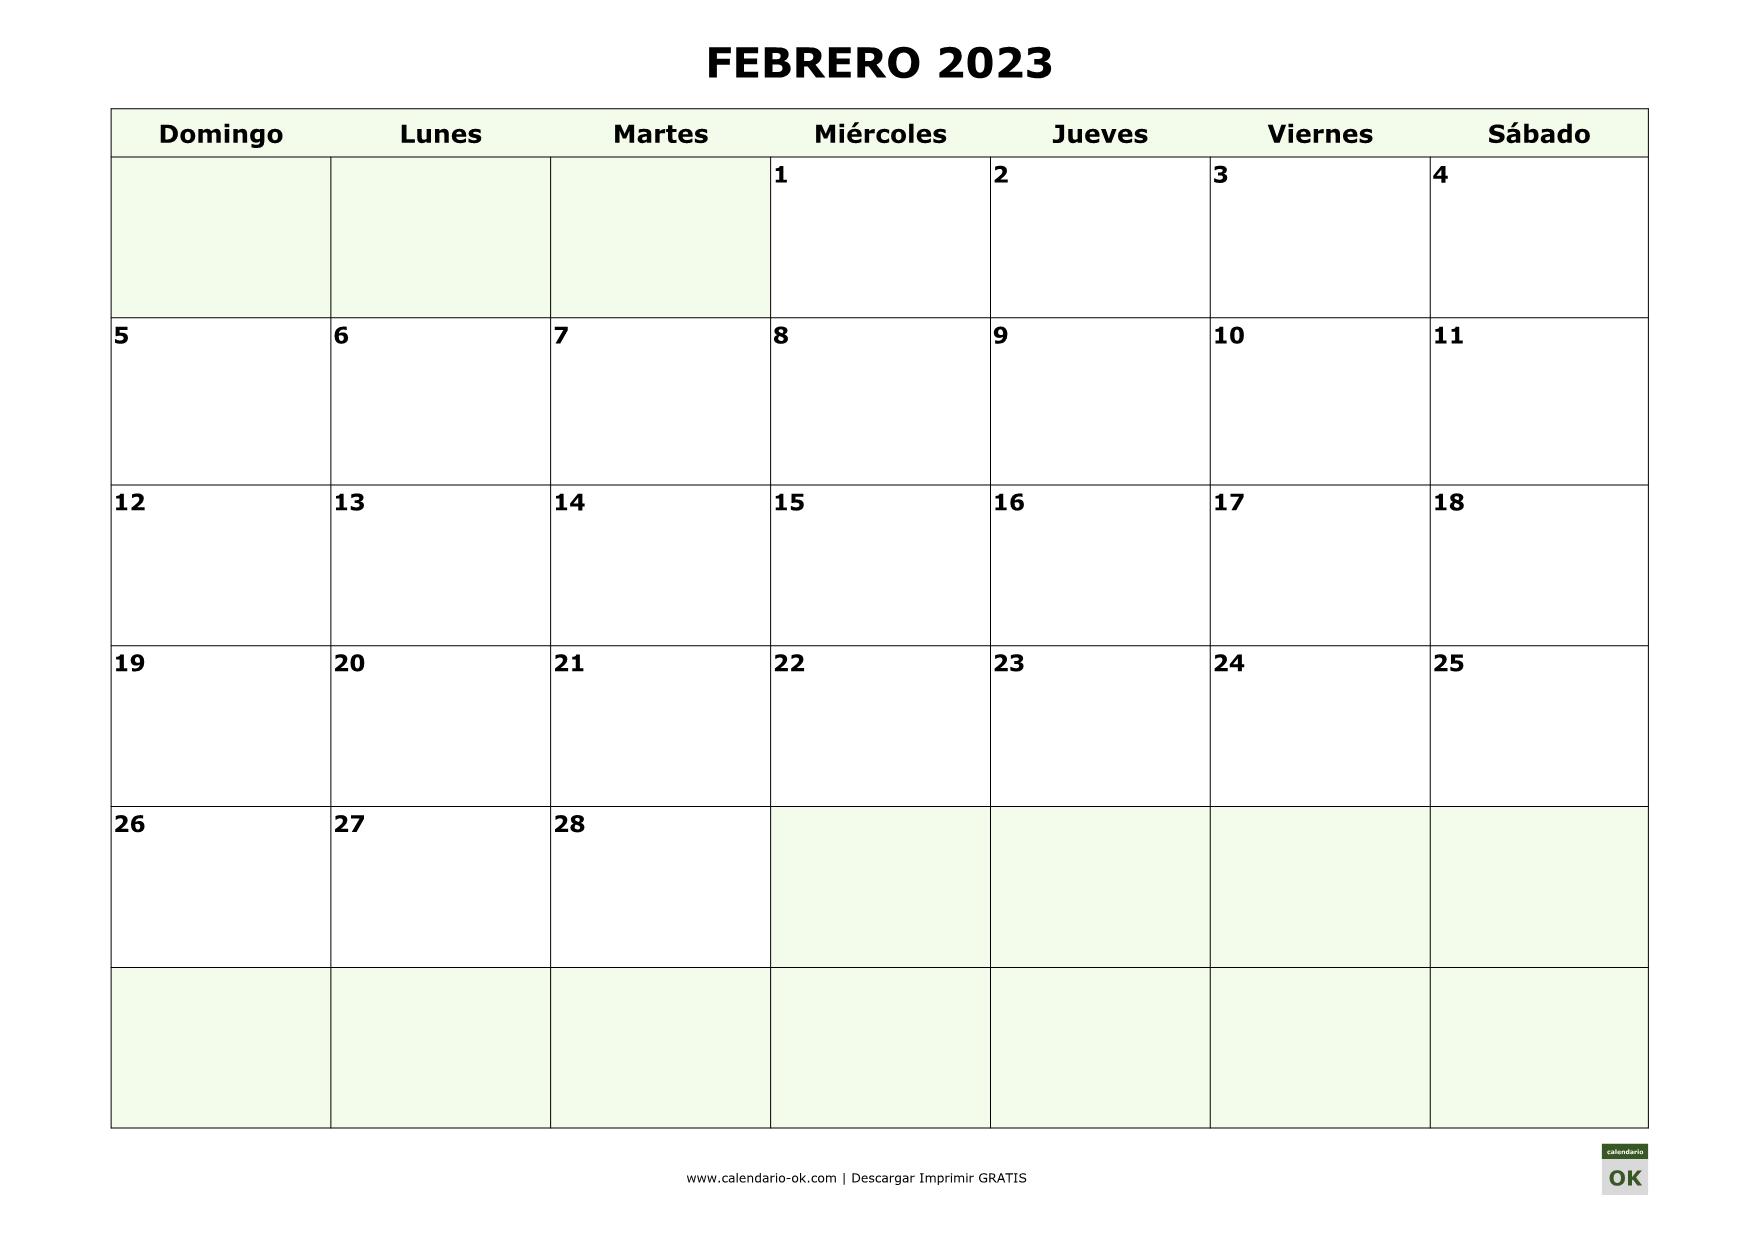 FEBRERO 2023 empieza por DOMINGO